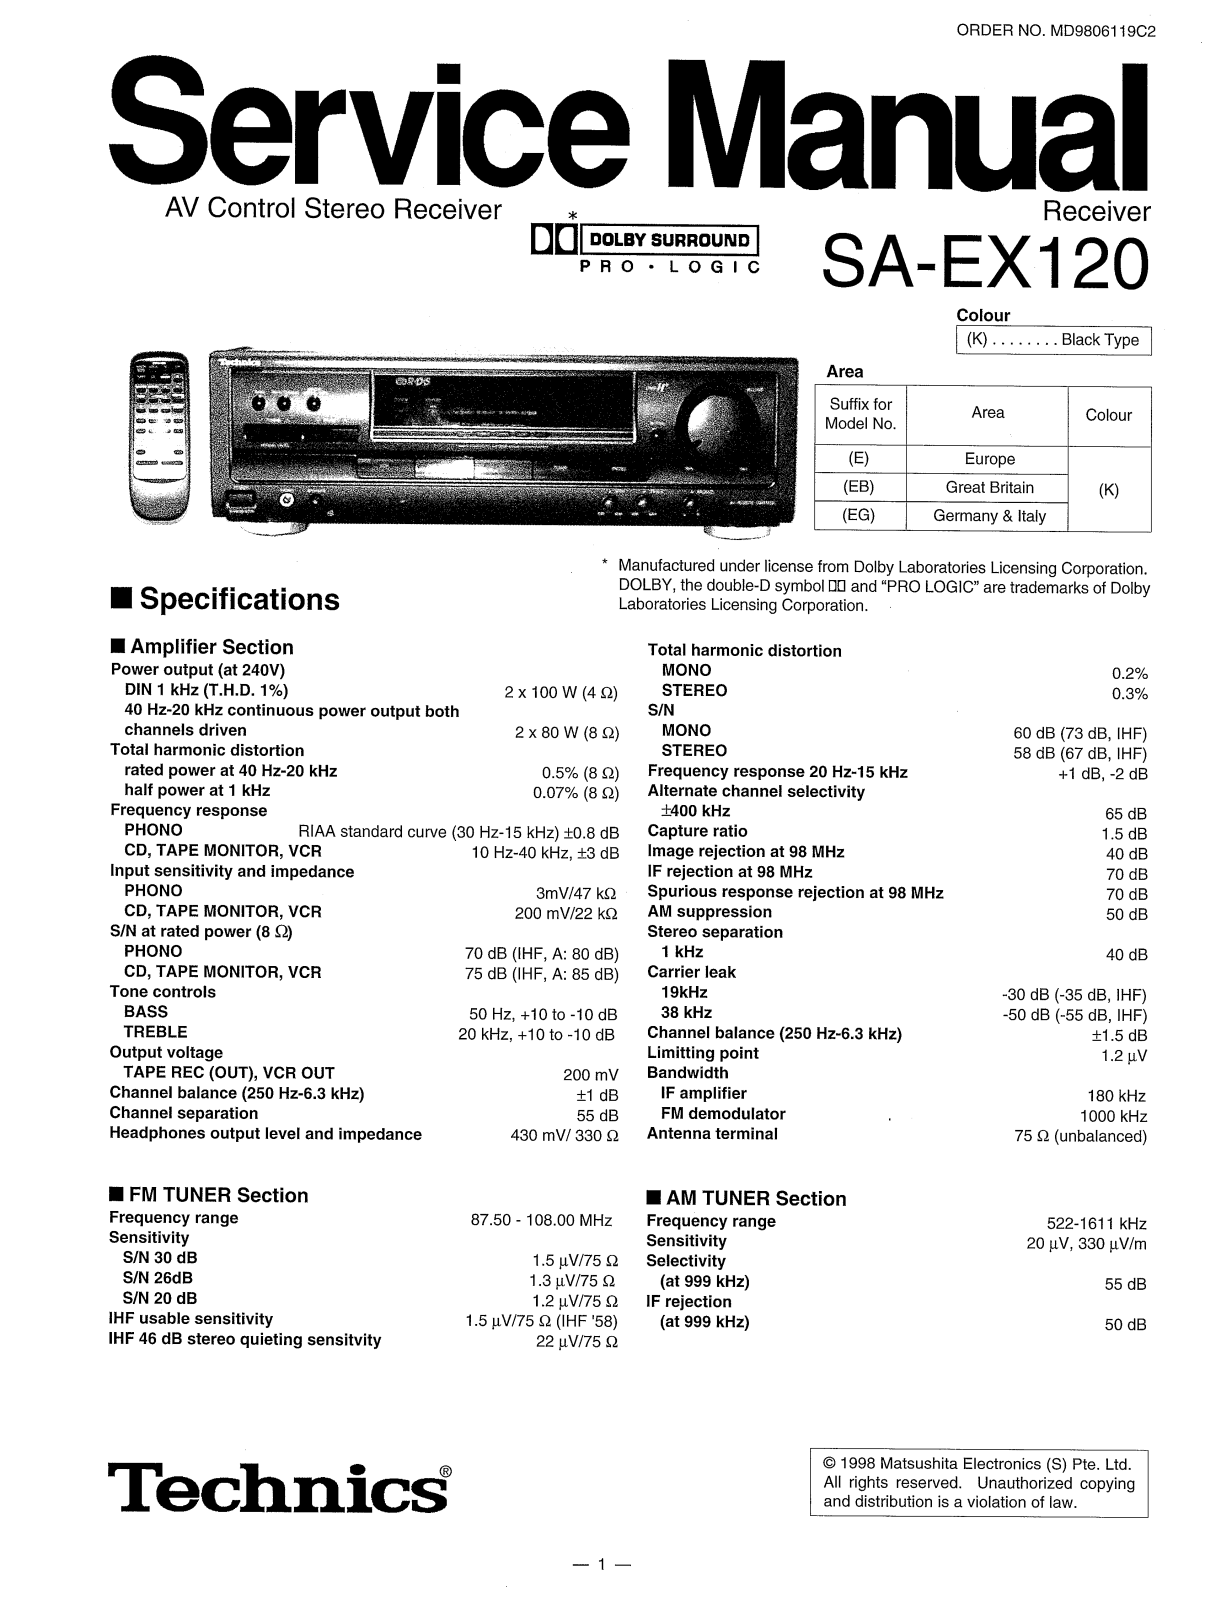 Technics SA-EX120 Service Manual